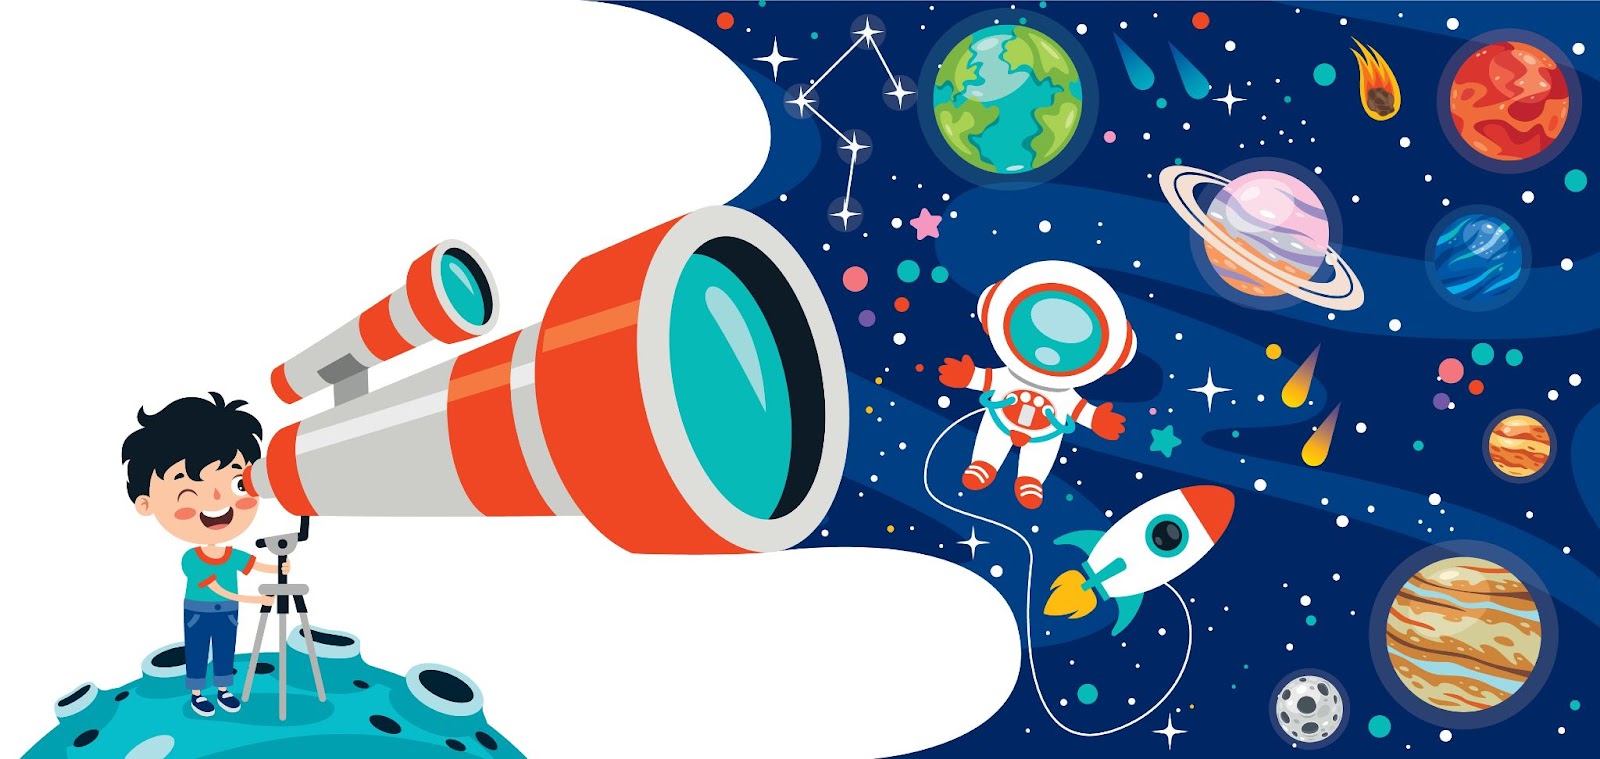 Giovane ragazzo utilizza un telescopio per osservare lo spazio, le piante e le stelle, illustrazione